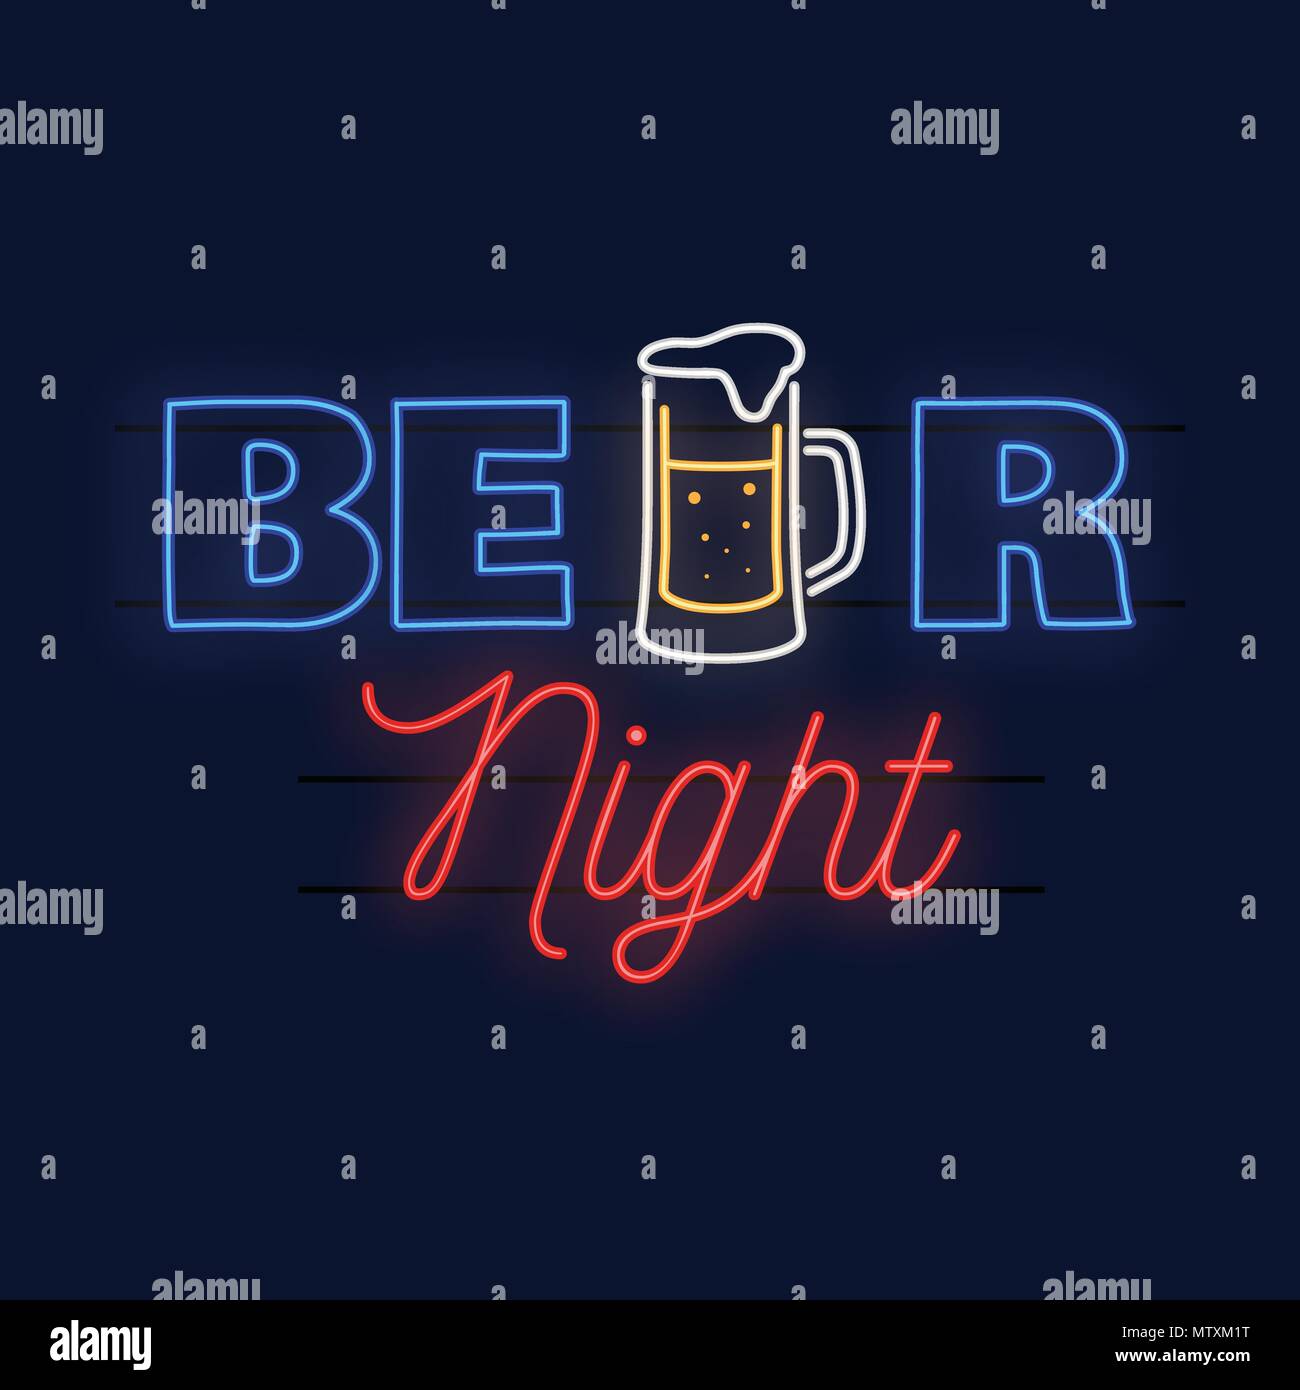 Bier Nacht. Vector Illustration. Neon Design für eine Bar, ein Pub und ein Restaurant. Stock Vektor